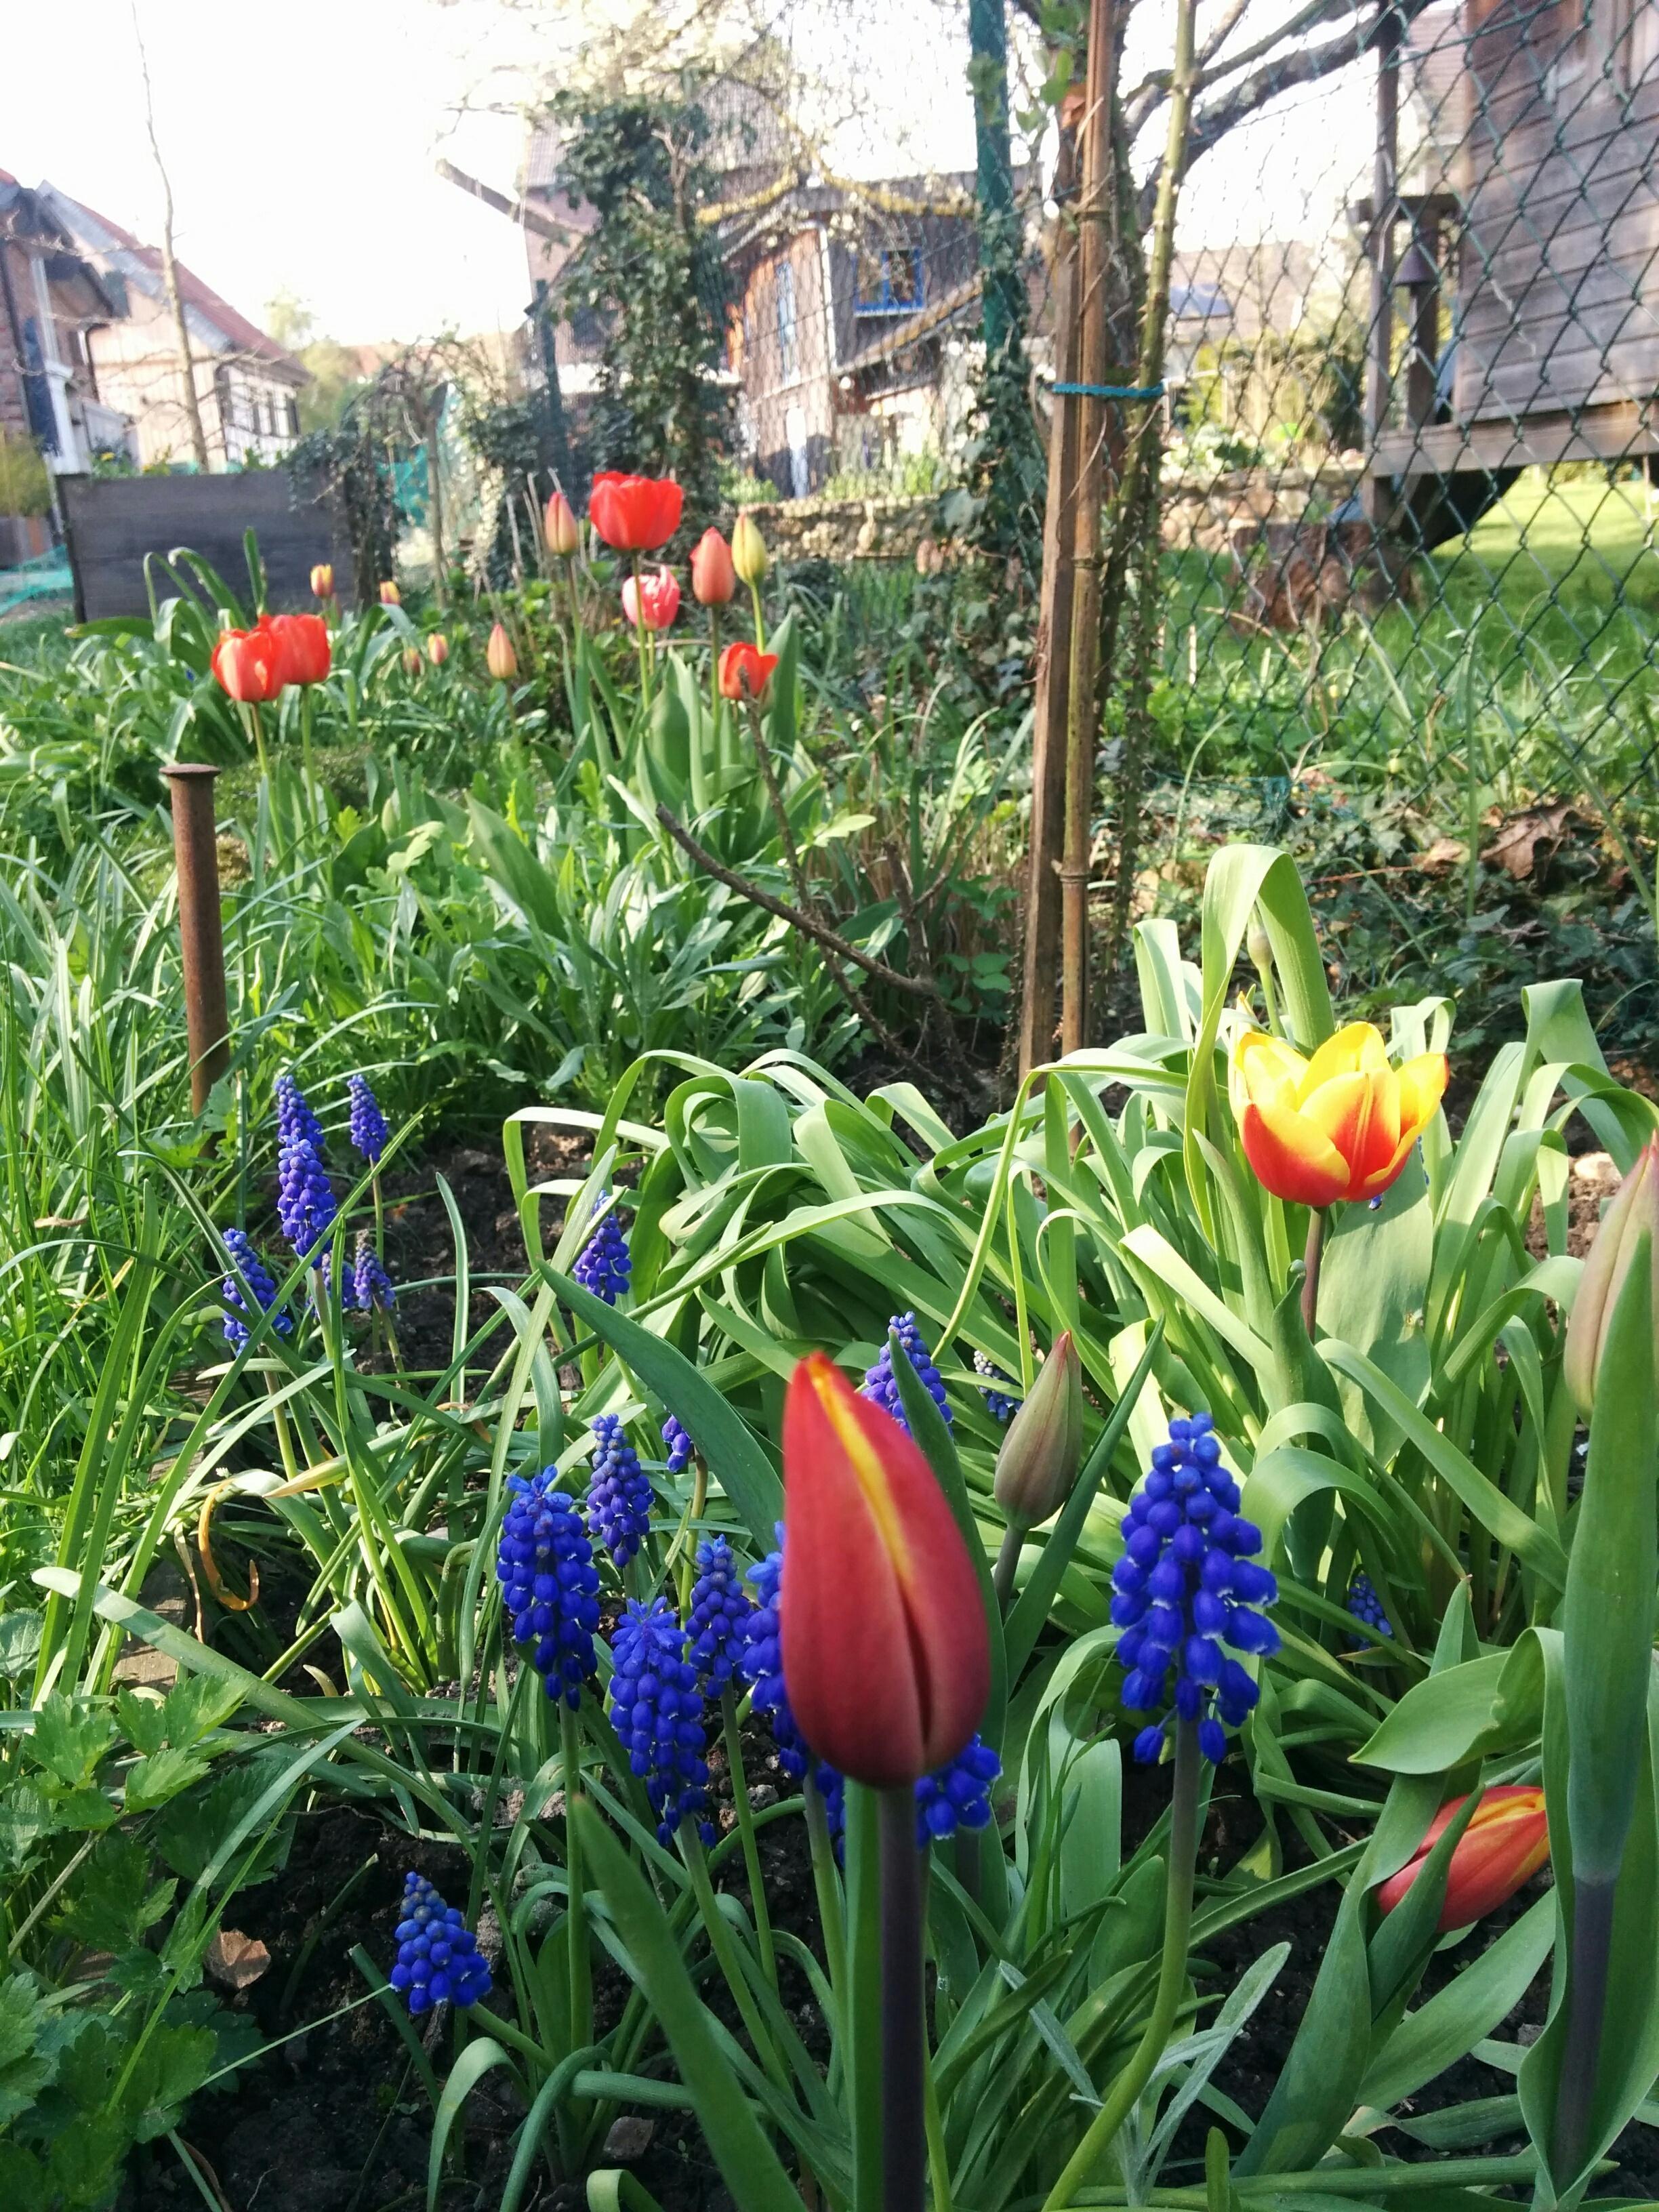 Ich liebe unseren Garten
#spring #flowers #gardenlovers #sun